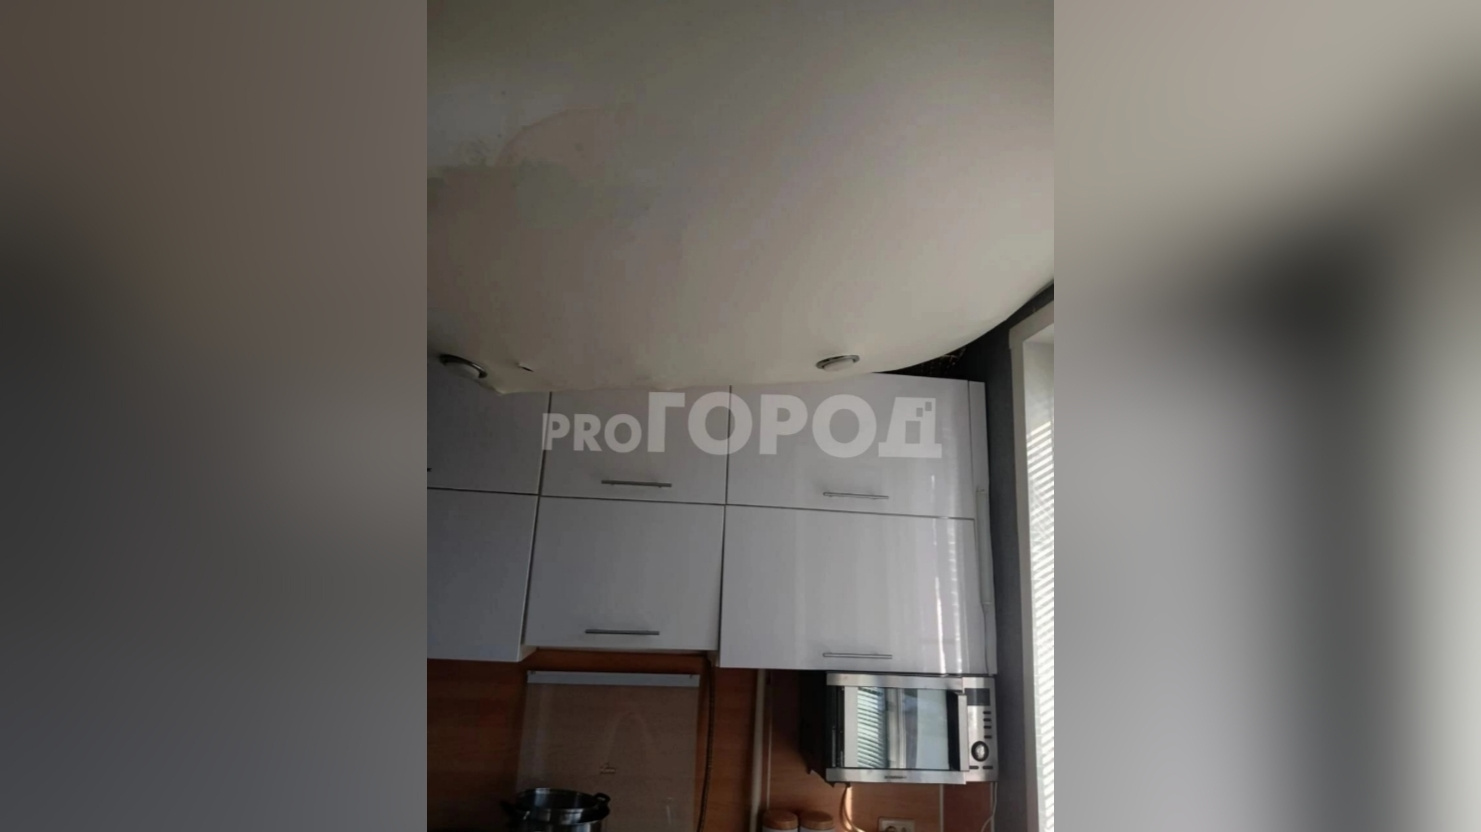 В областном правительстве ответили жильцам кировского дома, пожаловавшимся на рухнувший потолок